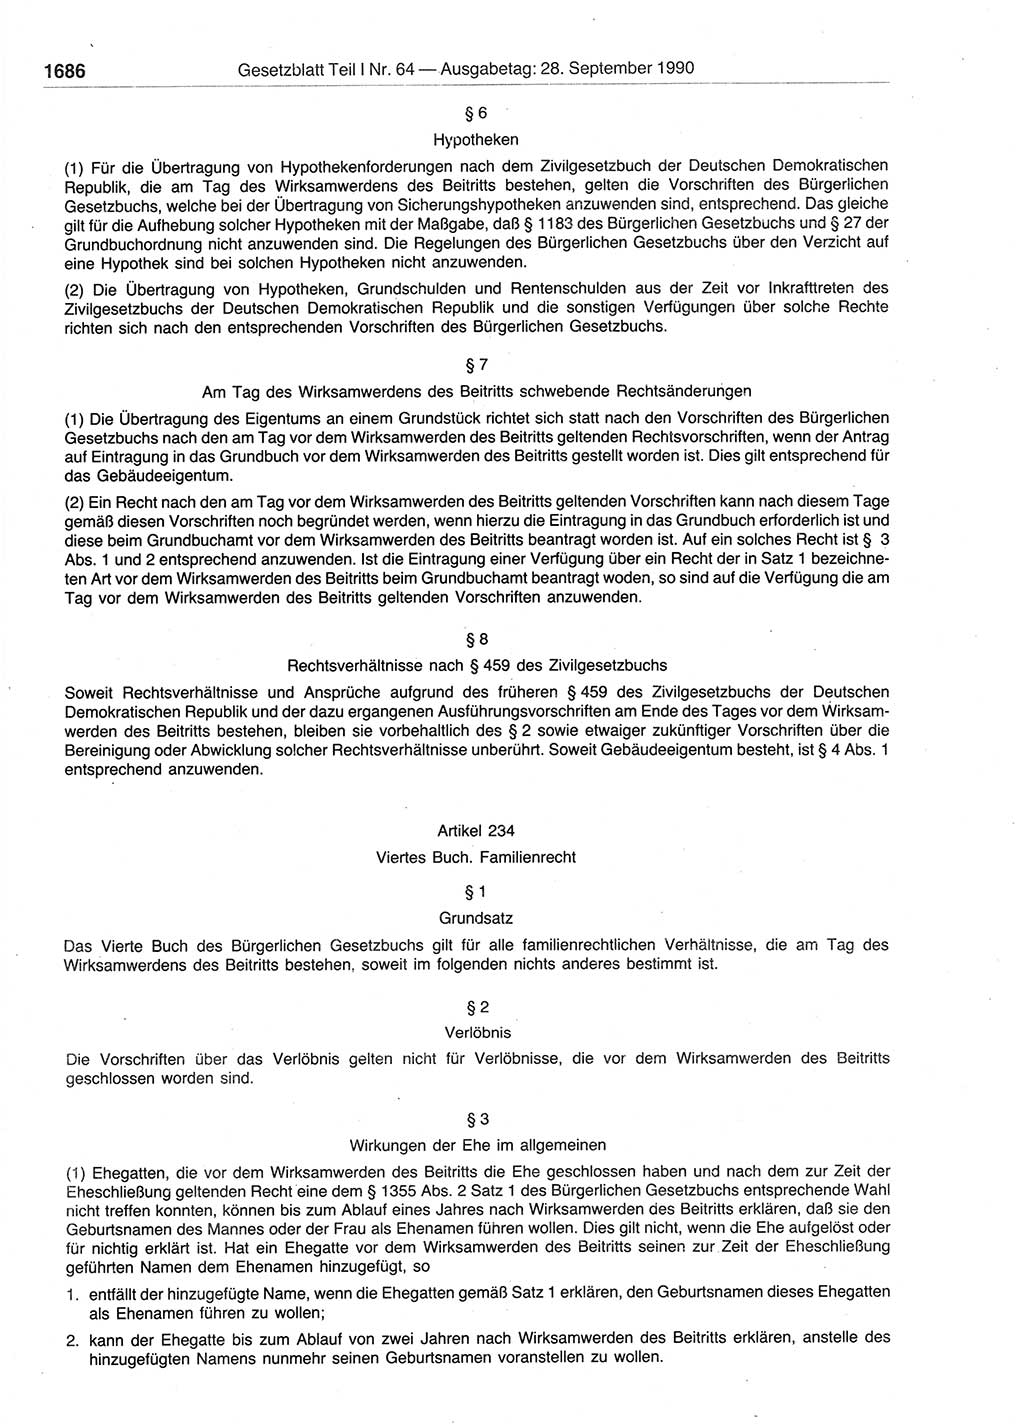 Gesetzblatt (GBl.) der Deutschen Demokratischen Republik (DDR) Teil Ⅰ 1990, Seite 1686 (GBl. DDR Ⅰ 1990, S. 1686)